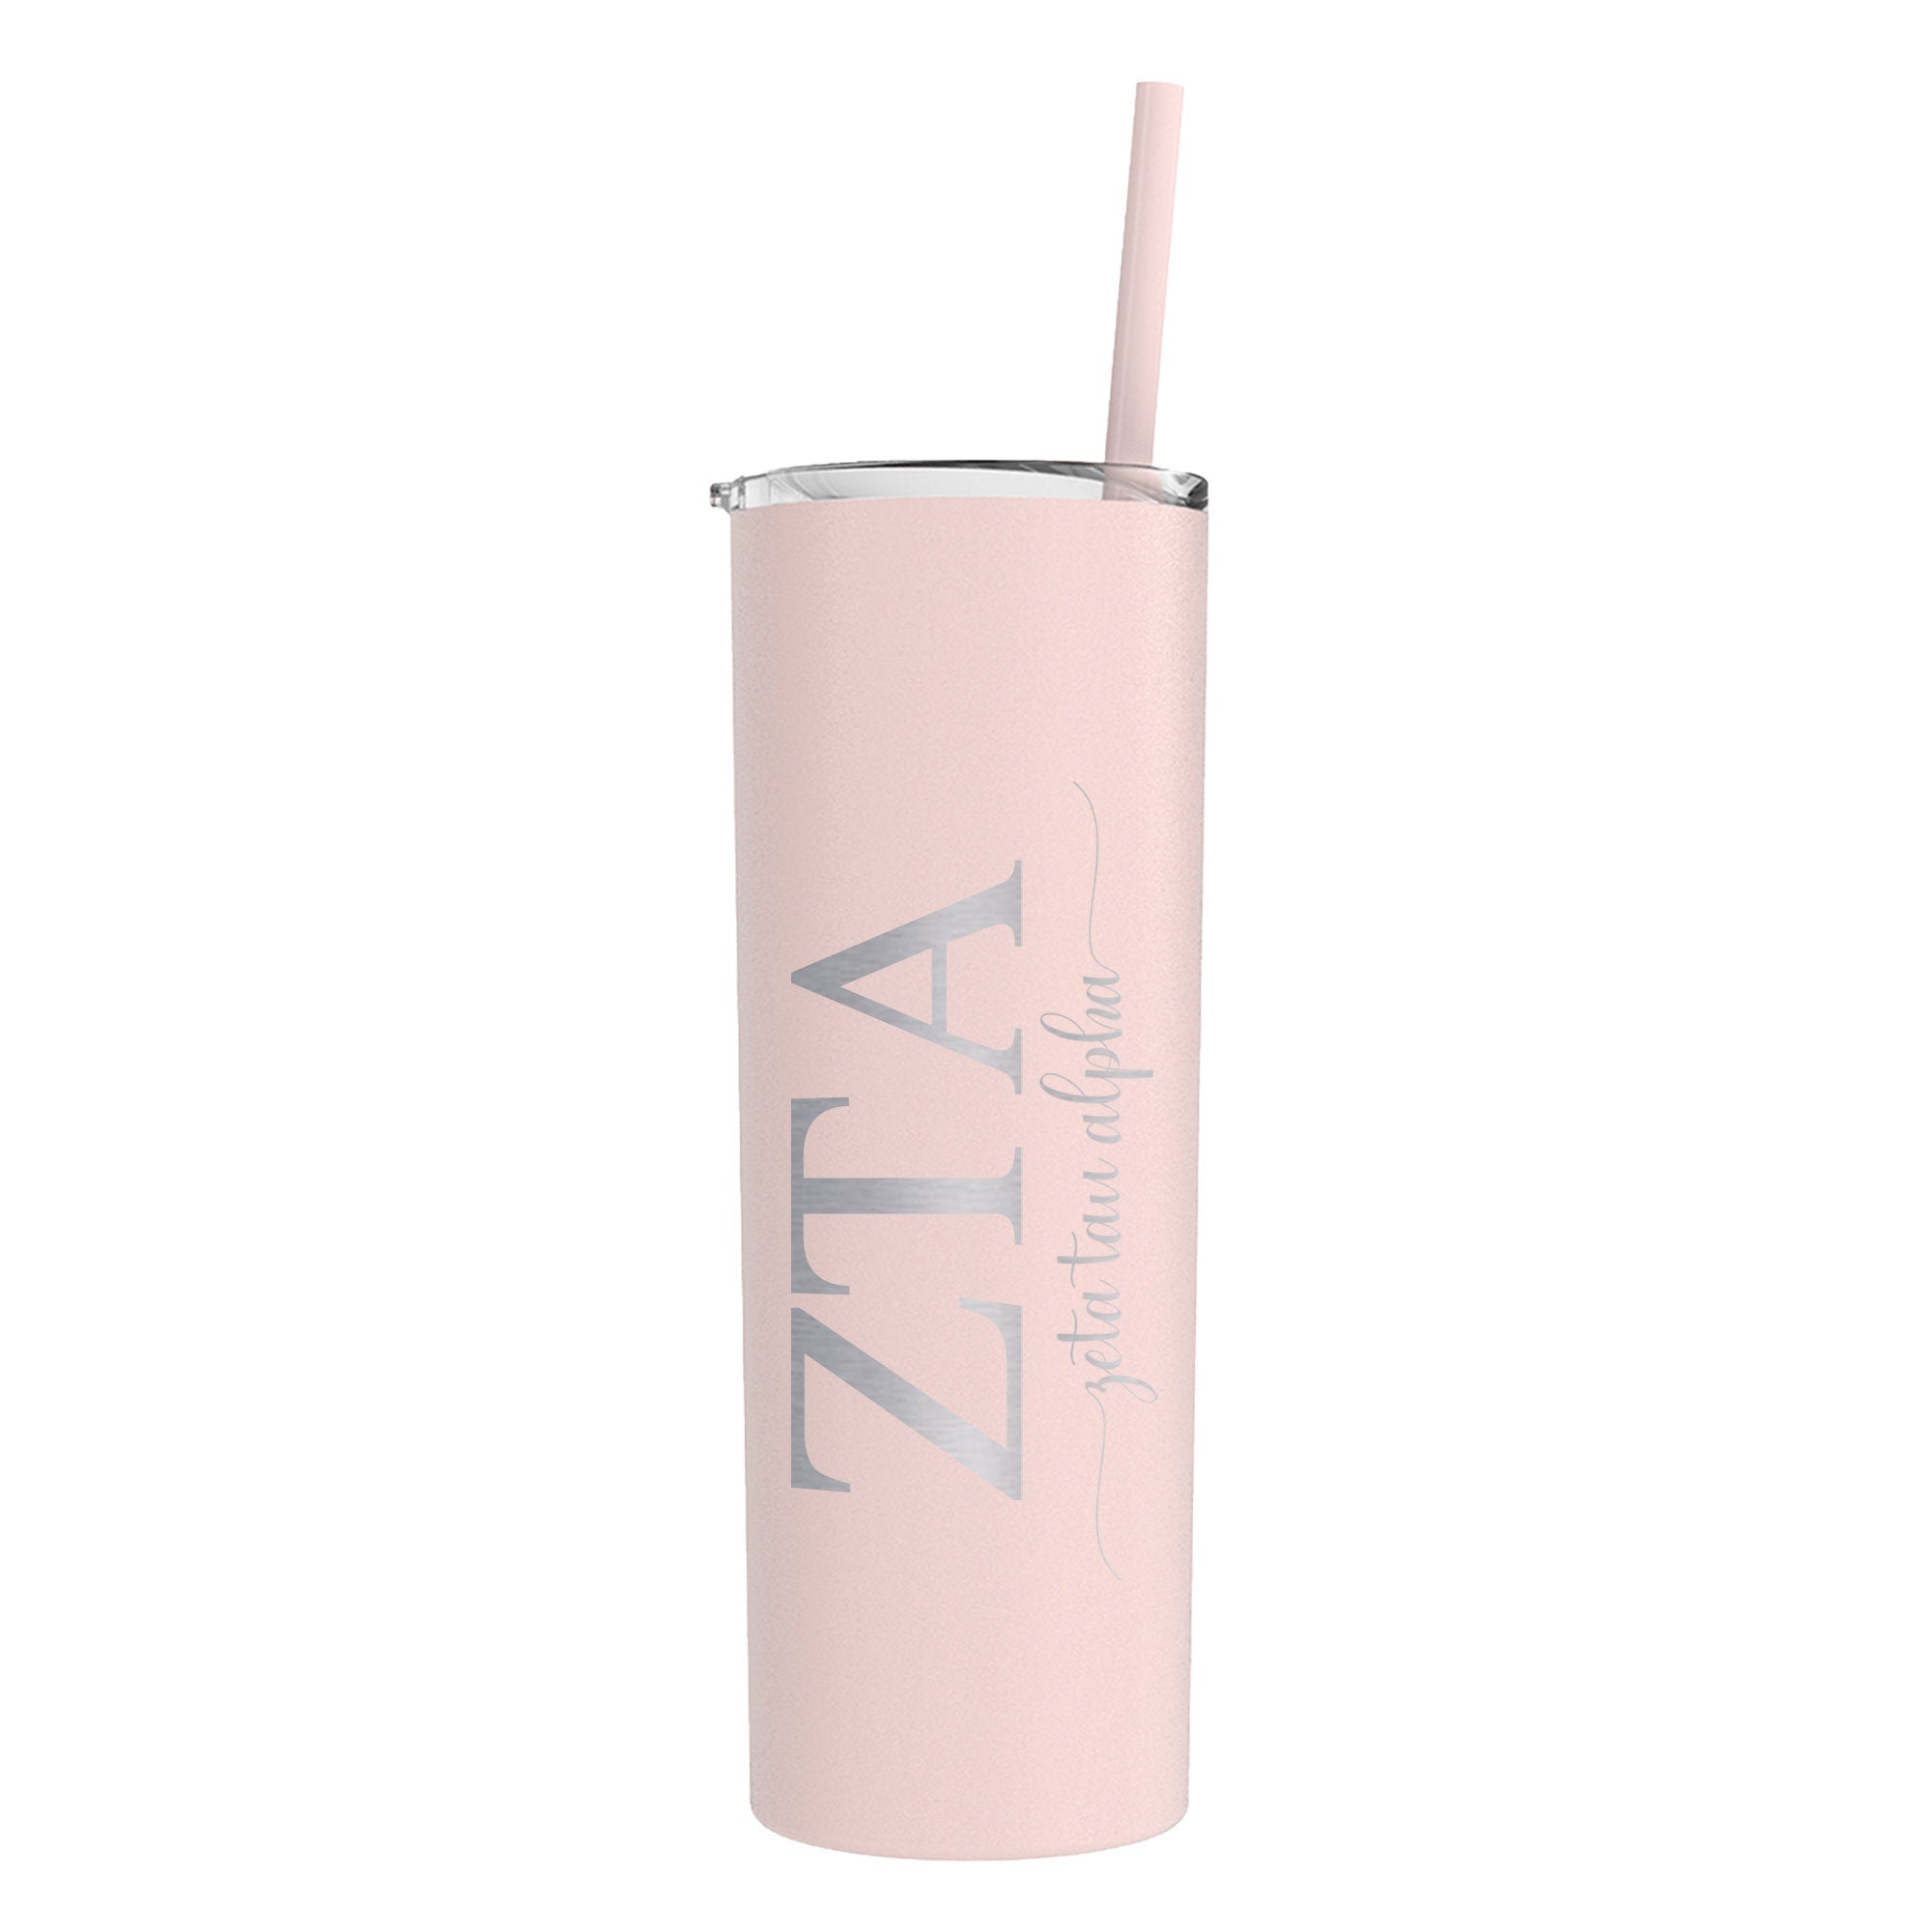 Zeta Tau Alpha Script Skinny Tumbler with Straw - Go Greek Chic